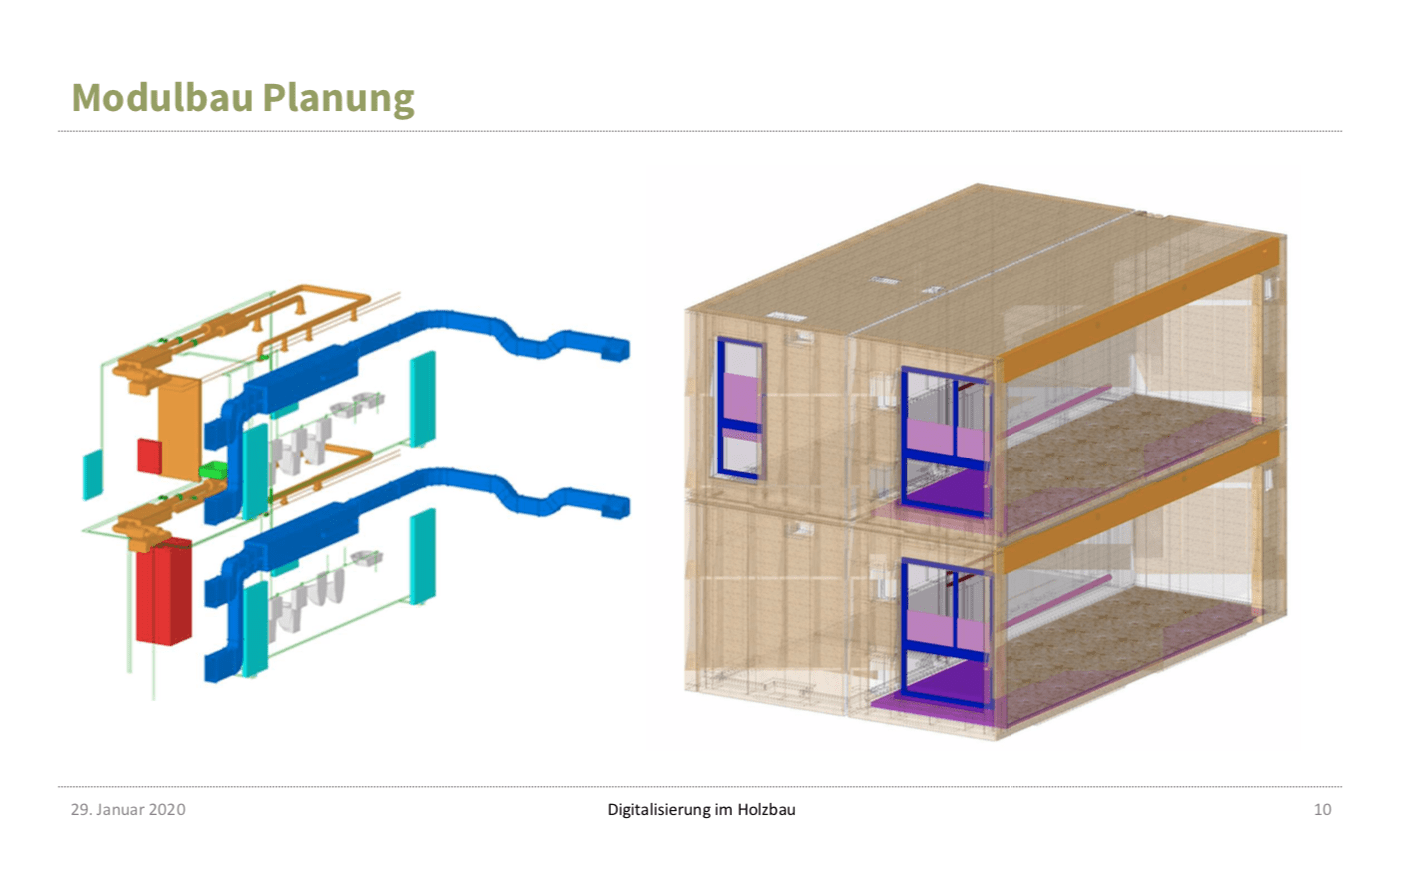 Modulbauplanung in 3D: Ansichten eines BIM-Modells aus dem Vortrag von Gerd Prause (Abbildung: Prause Holzbauplanung)